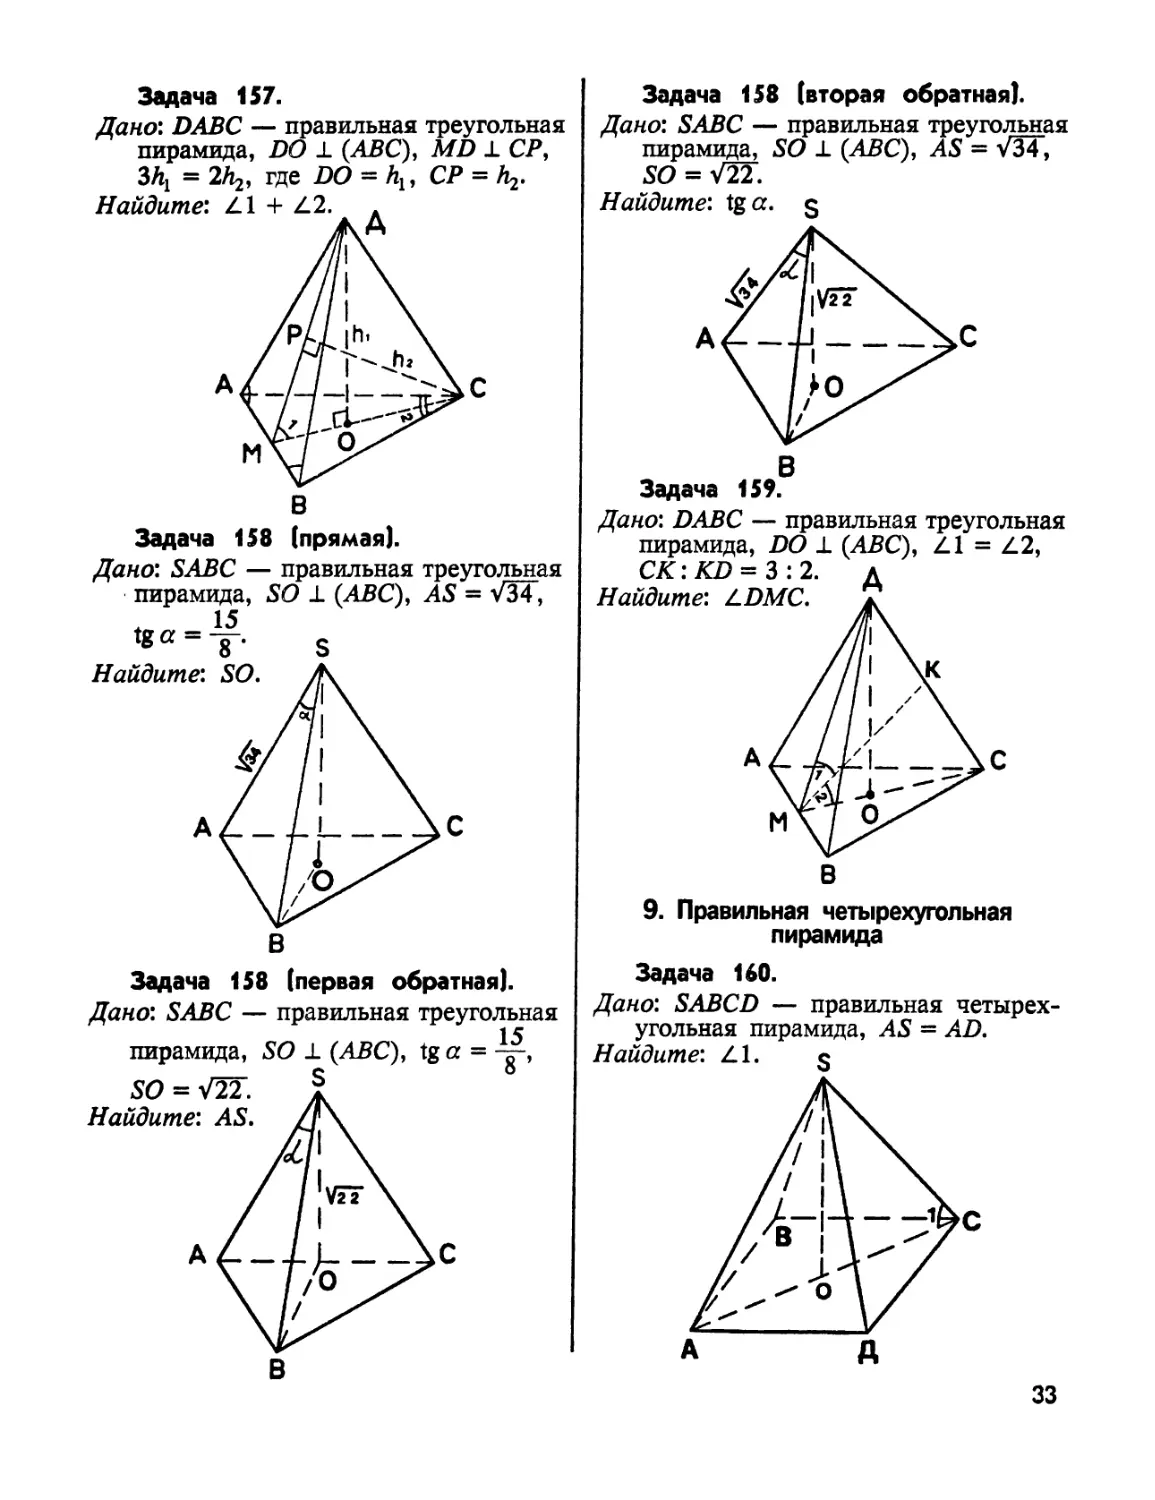 8. Правильная четырехугольная пирамада